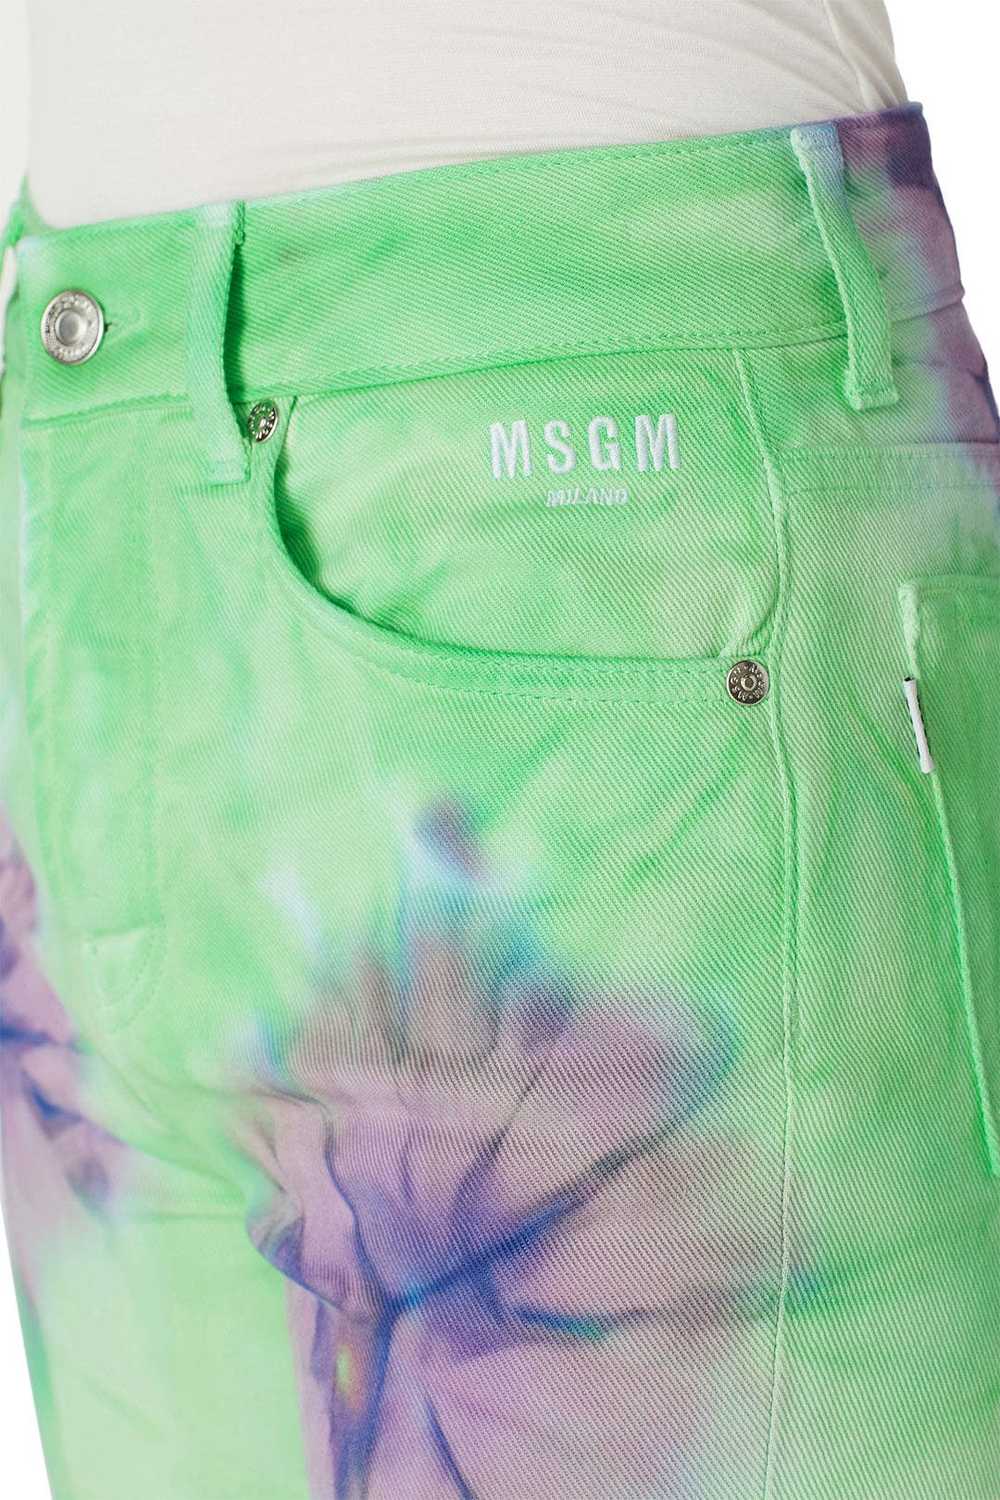 MSGM Tye Dye Jeans - image 4